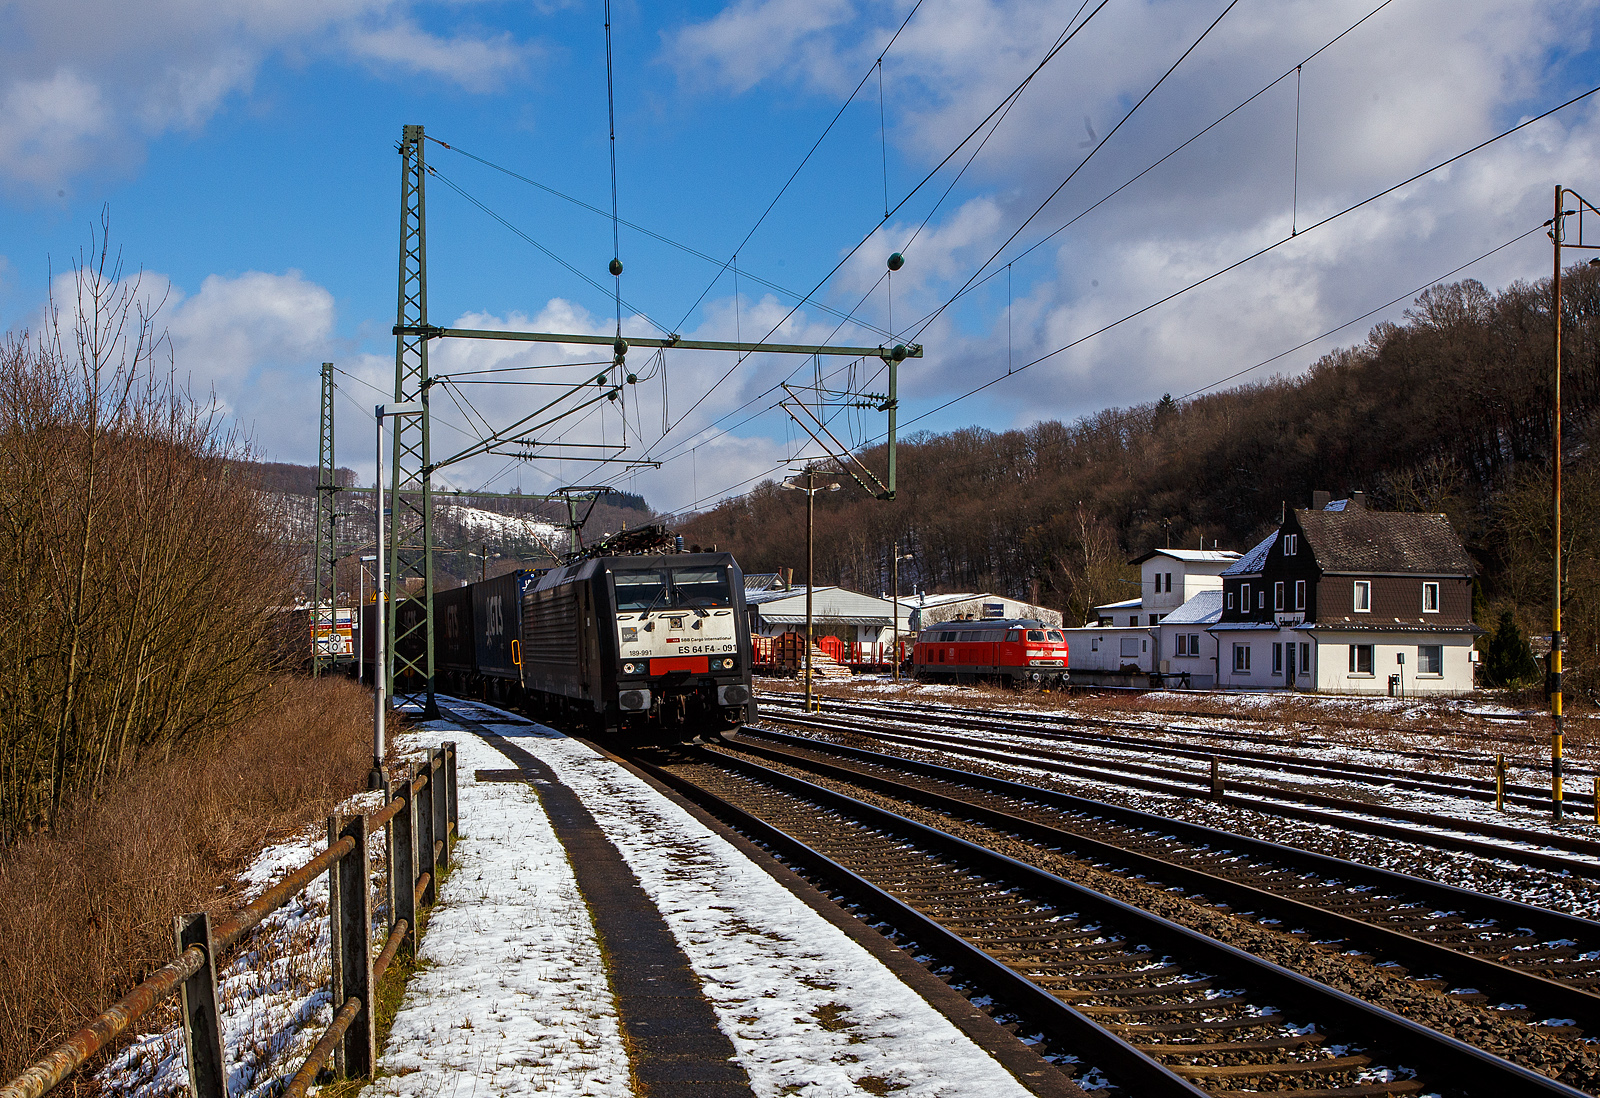 Die an die SBB Cargo International AG vermietete MRCE Dispolok ES 64 F4 - 091 bzw. 189-991 / LZB 189 991-3 (91 80 6189 991-3 D-DISPO, Class 189-VE) fährt am 15.03.2023, mit einem KLV-Zug auf der Siegstrecke (KBS 460) durch Scheuerfeld (Sieg) in Richtung Köln. Während hinten beim Kleinbahnhof der WEBA (Westerwaldbahn) die 218 191-5 (92 80 1218 191-5 D-MZE) der MZE - Manuel Zimmermann Eisenbahndienstleistungen abgestellt ist.

Die SIEMENS EuroSprinter wurde 2004 von SIEMENS in München-Allach unter der Fabriknummer 20739 gebaut.

Die BR 189 (Siemens ES64F4) hat eine Vier-Stromsystem-Ausstattung. Sie ist in allen vier in Europa üblichen Bahnstromsystemen einsetzbar. Diese hier hat die Variante E und besitzt die Zugbeeinflussungssysteme LZB/PZB, ETCS, SCMT, ZUB, INTEGRA und ATB für den Einsatz in Deutschland, Österreich, Schweiz, Italien, Niederlande, Slowenien und Rumänien.

Die Stromabnehmerbestückung ist folgende:
Pos. 1: CH, FR (AC), LU (AC), BE (AC)
Pos. 2: IT, SI, HR (DC)
Pos. 3: NL (DC), CZ (DC), FR (DC), SK, LU (DC)
Pos. 4: DE, AT, NL (AC), DK, CZ (AC), HR (AC), HU, RO